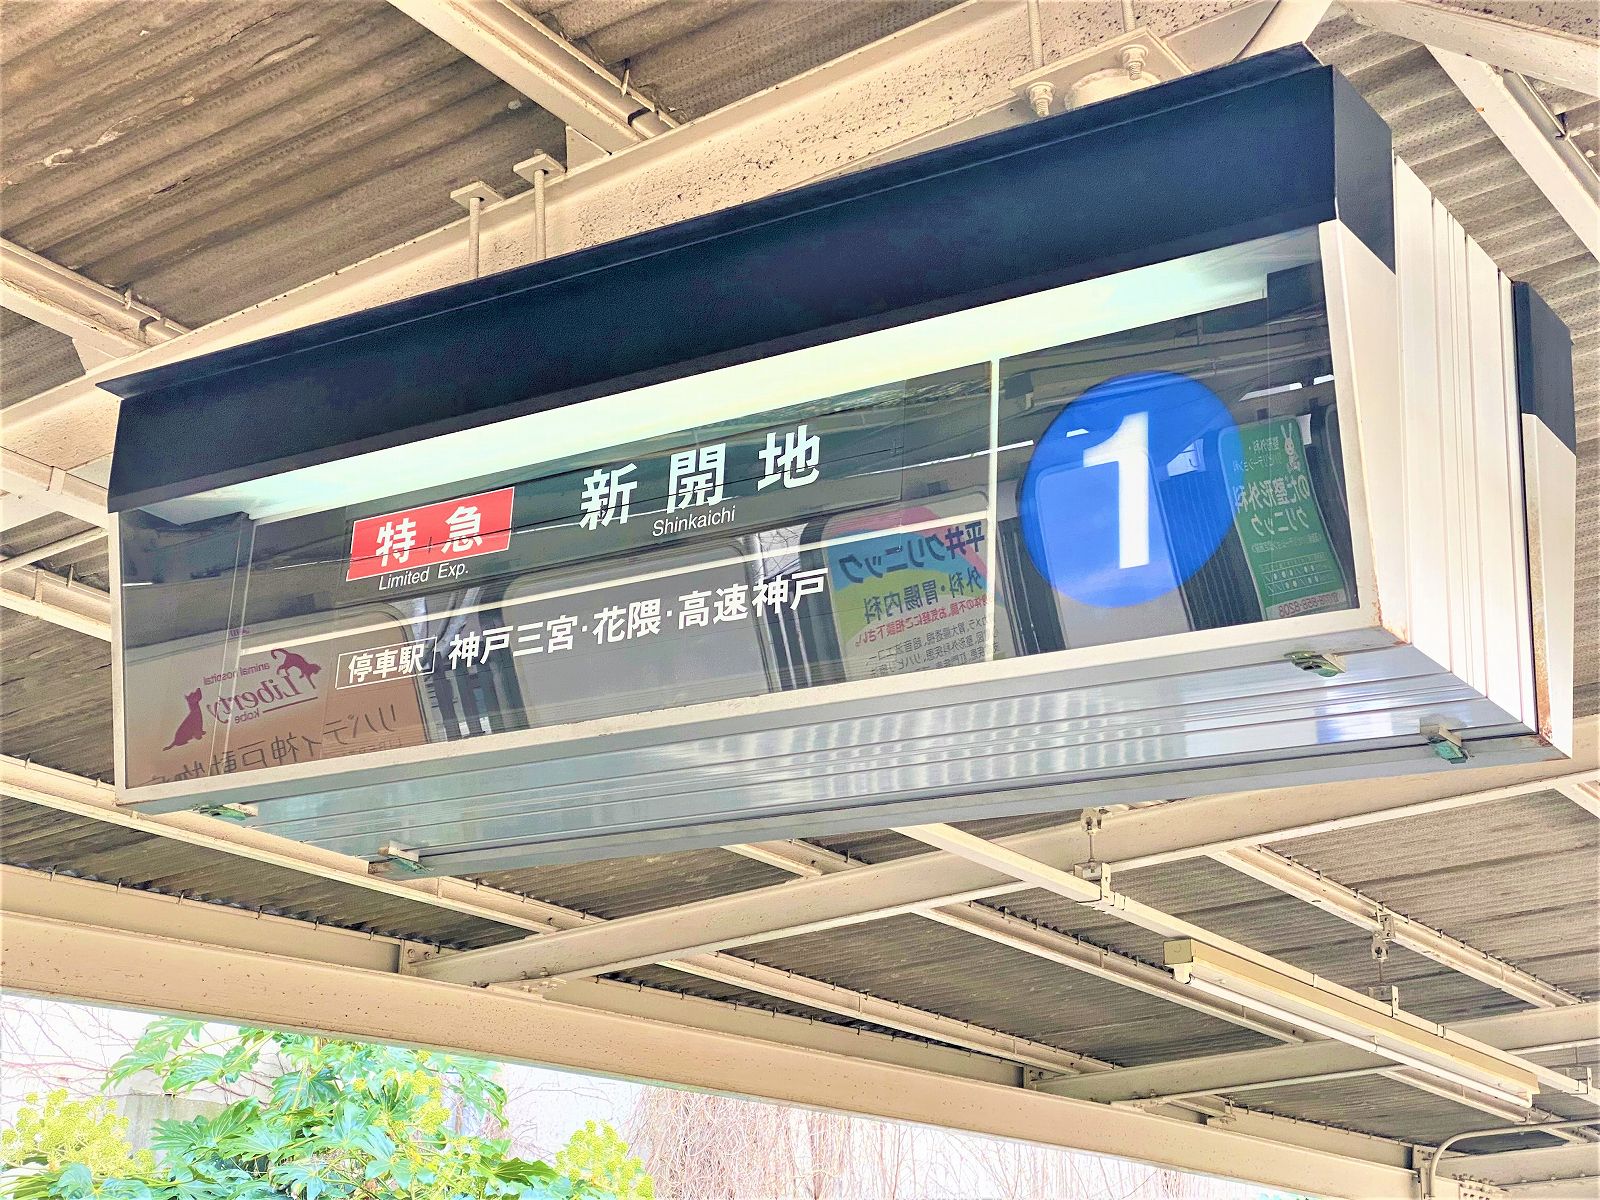 阪急神戸線・岡本駅の「パタパタ」（反転フラップ式案内表示機）前に